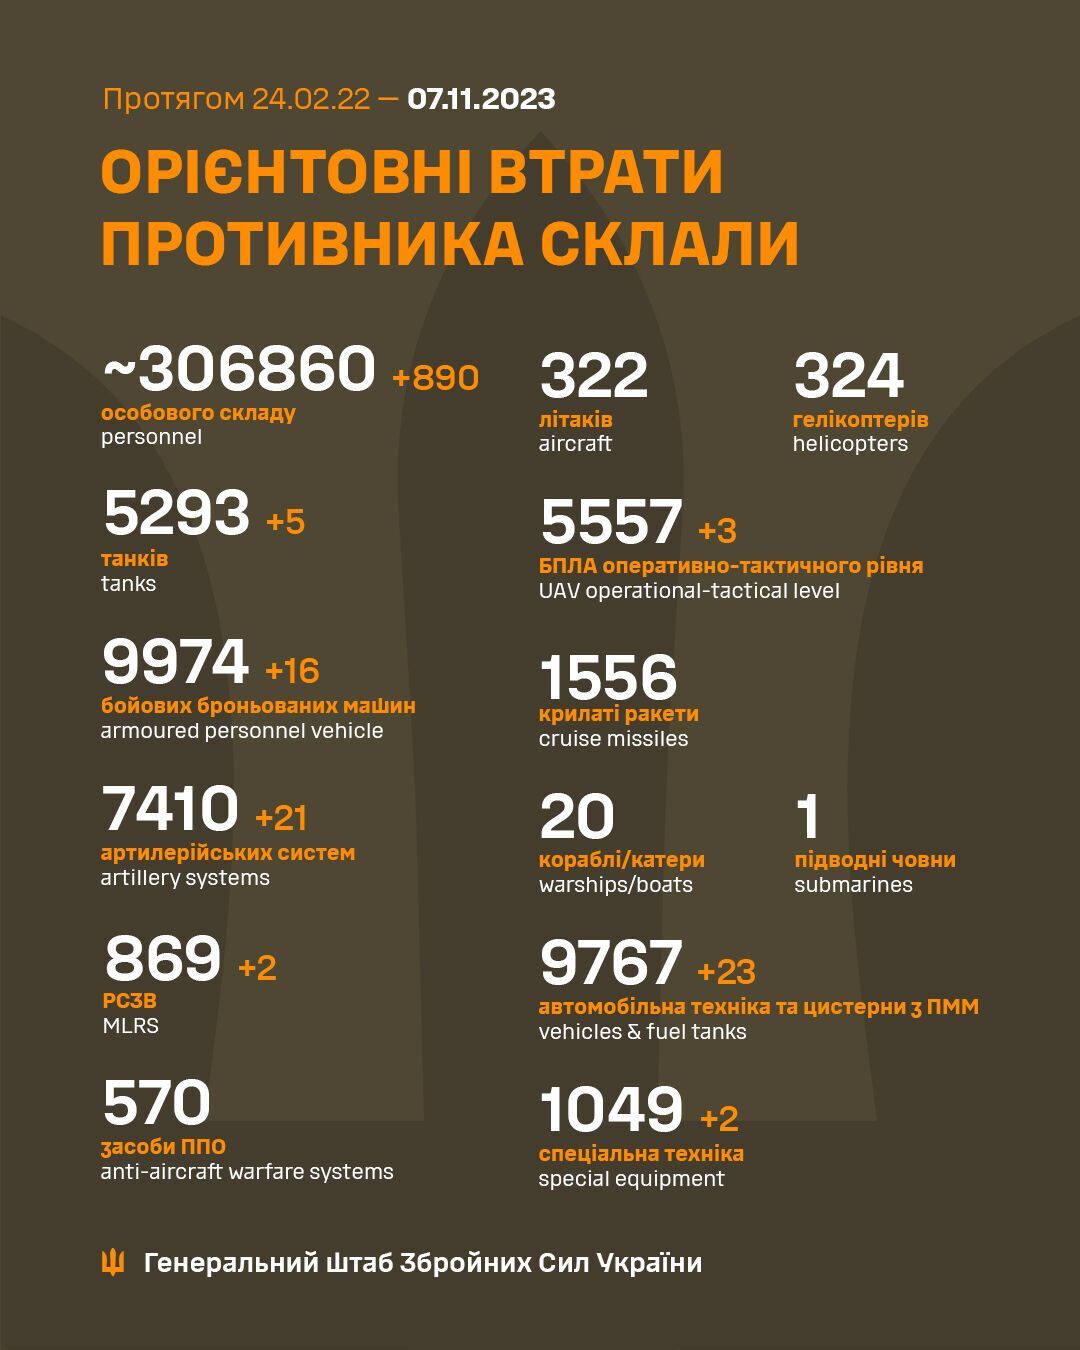 Воины ВСУ за сутки обезвредили 890 оккупантов и 16 ББМ врага